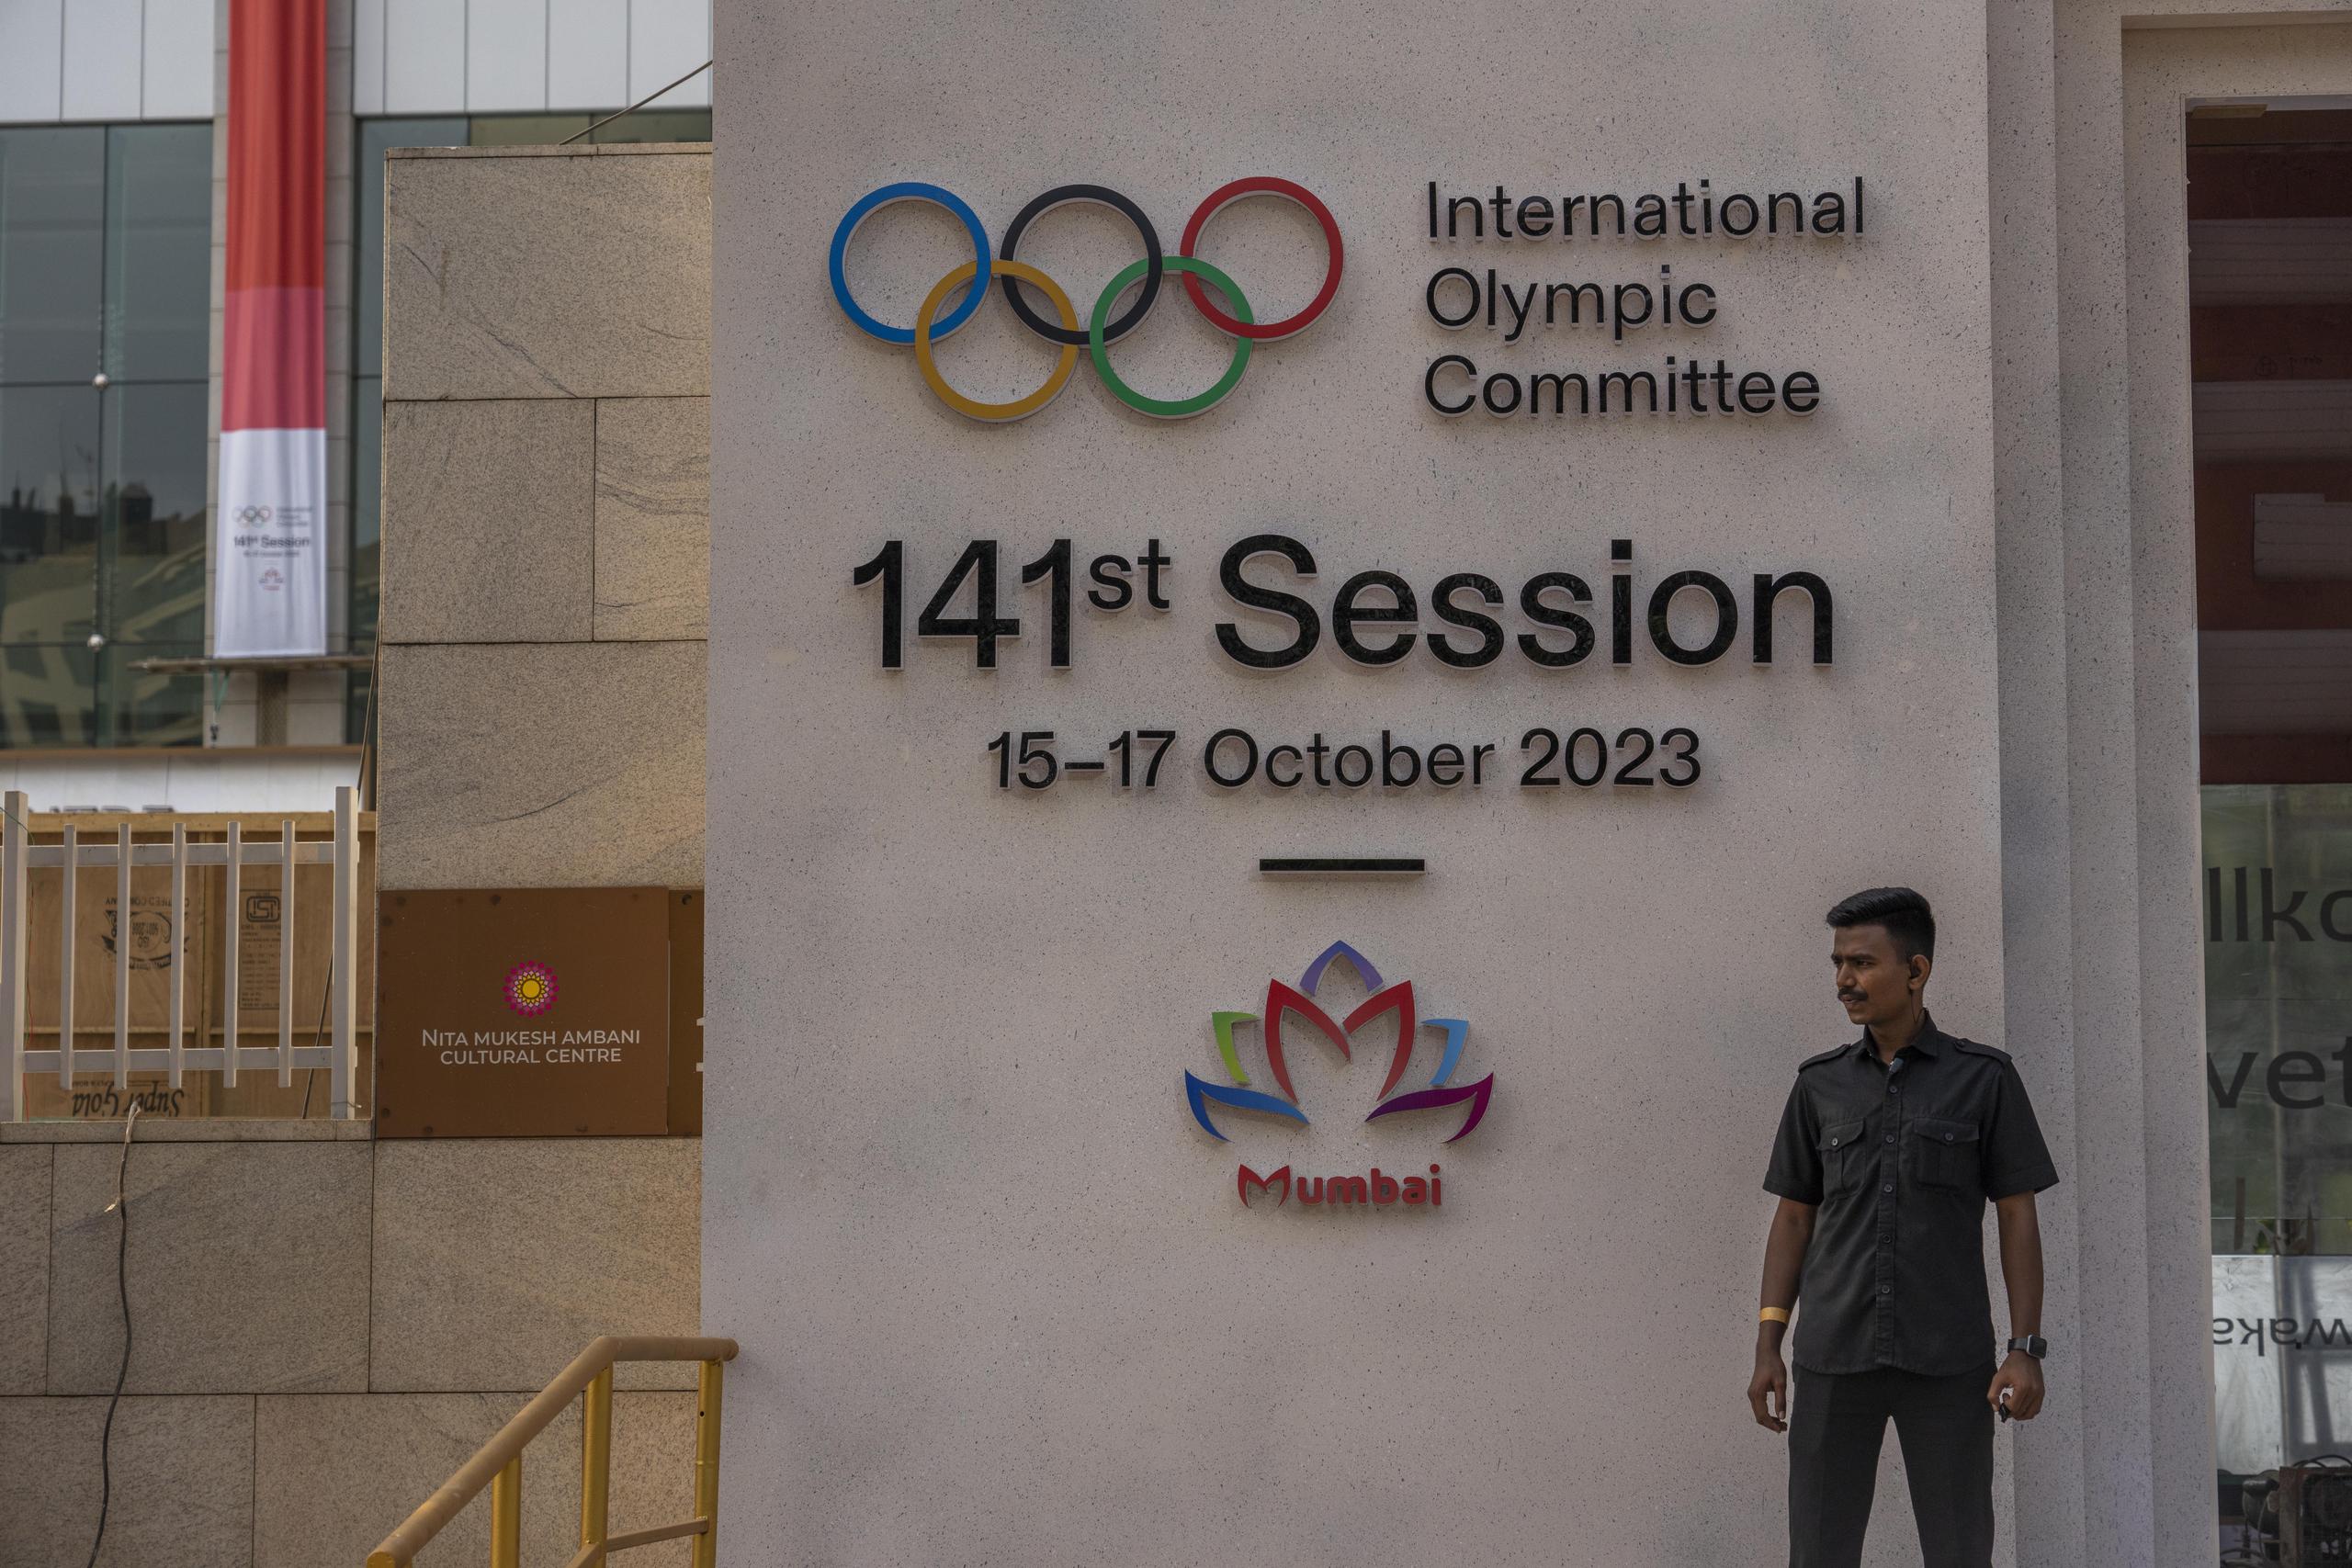 Un agente de seguridad en la entrada del escenario donde se realiza la sesión 141 sesión del Comité Olímpico Internacional, el jueves 12 de octubre de 2023, en Mumbai, India. (AP Foto/Rafiq Maqbool)